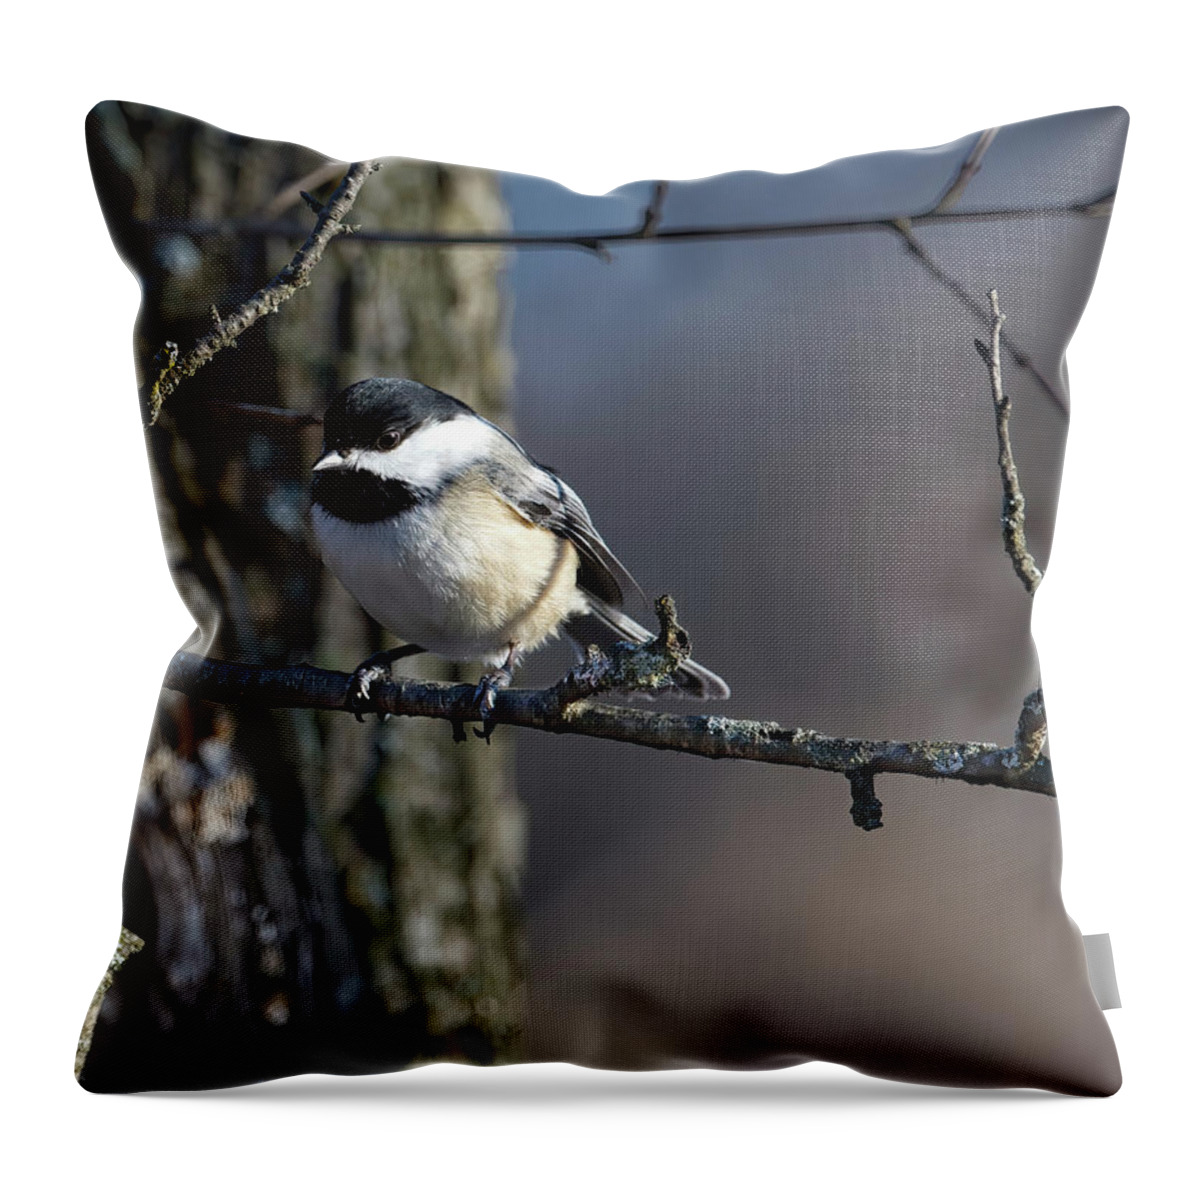 Bird Throw Pillow featuring the photograph Chicadee on a Branch by Flinn Hackett